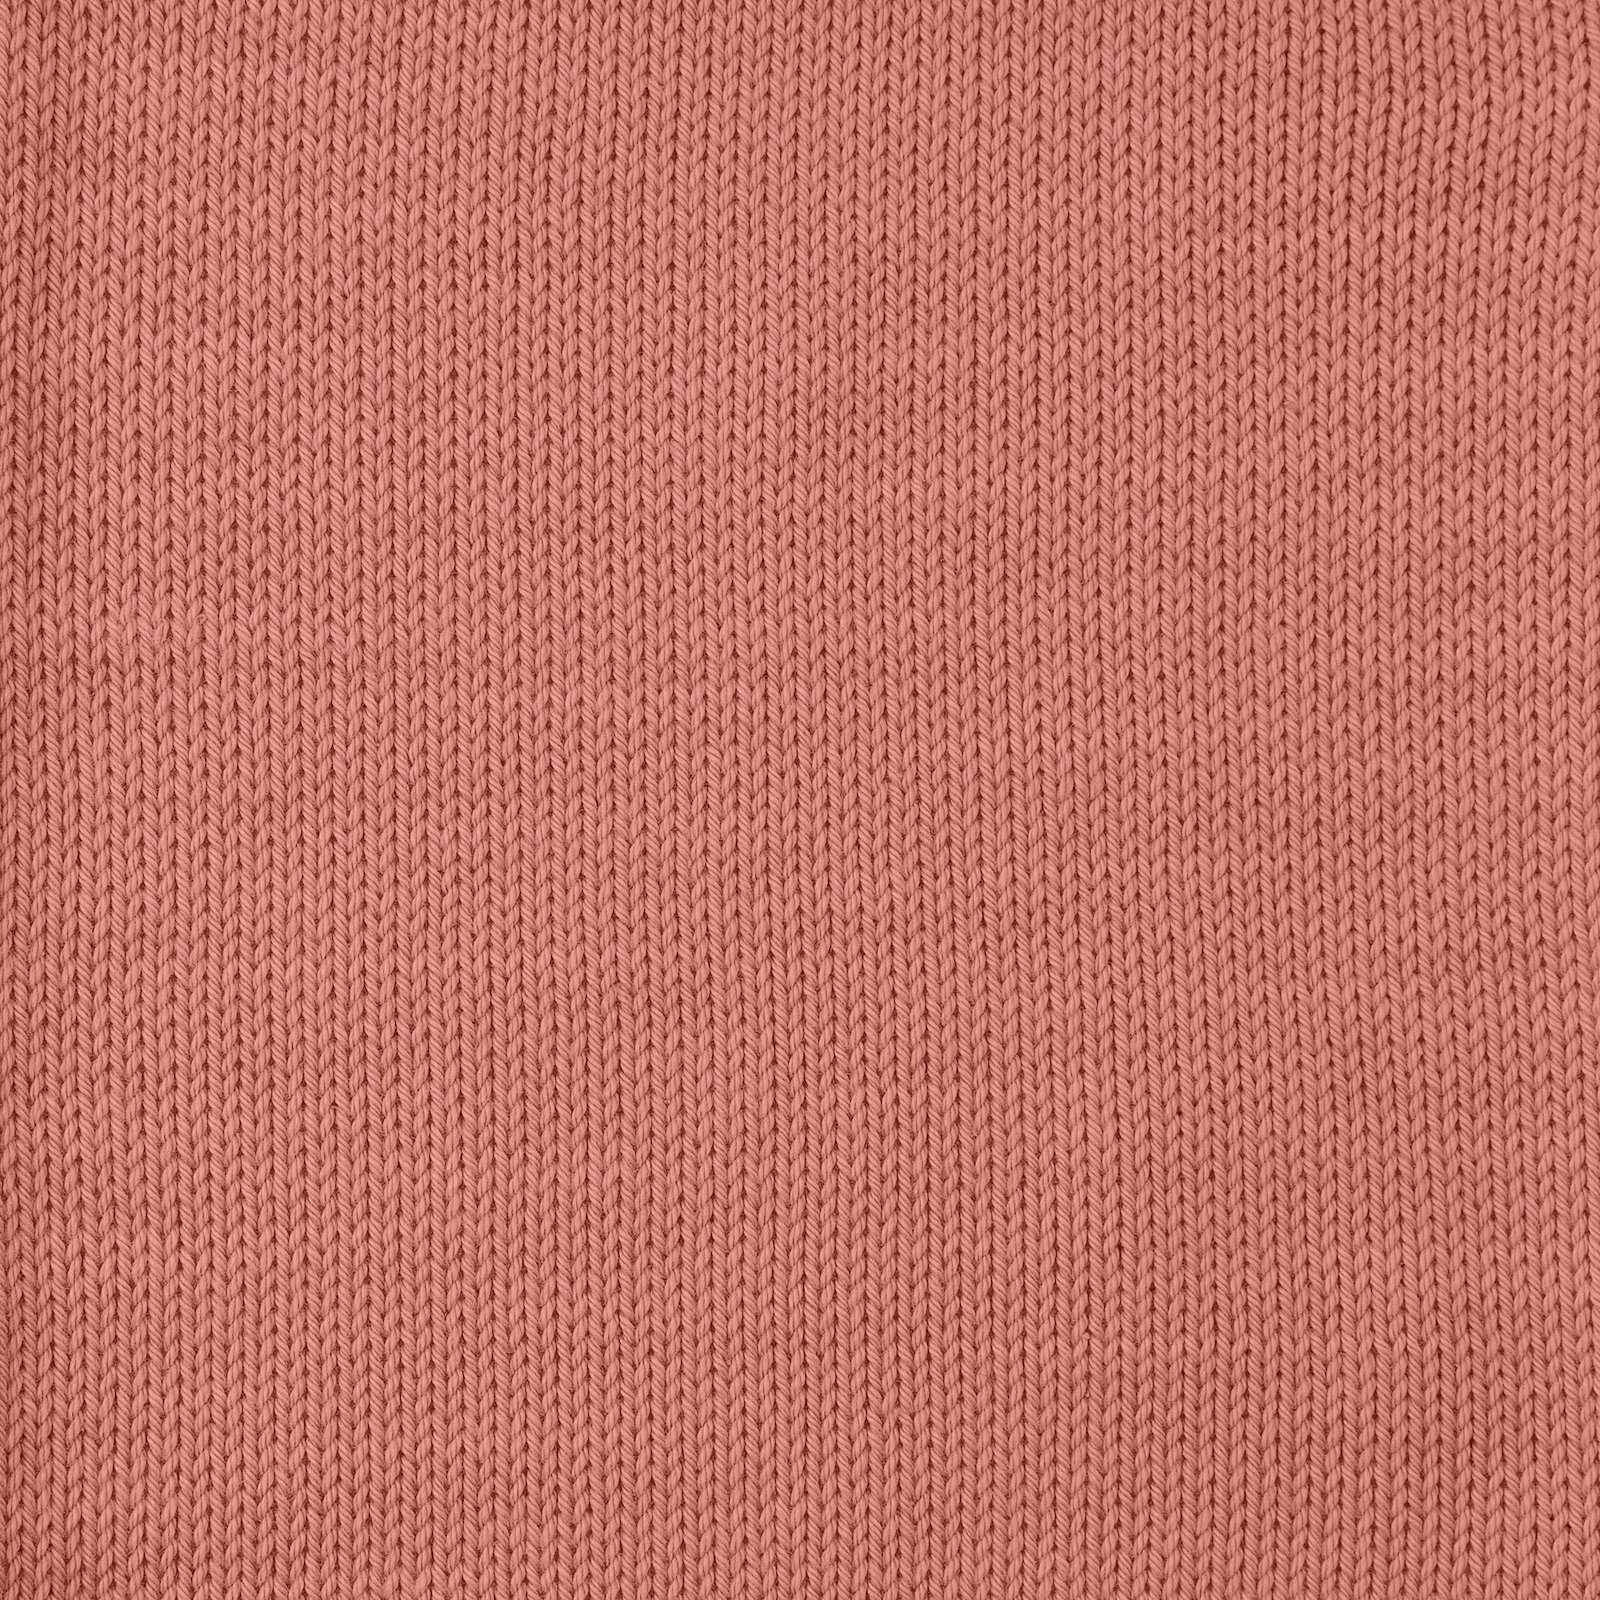 FRAYA, 100% cotton 8/4  yarn  "Colourful", dark rose 90060091_sskit